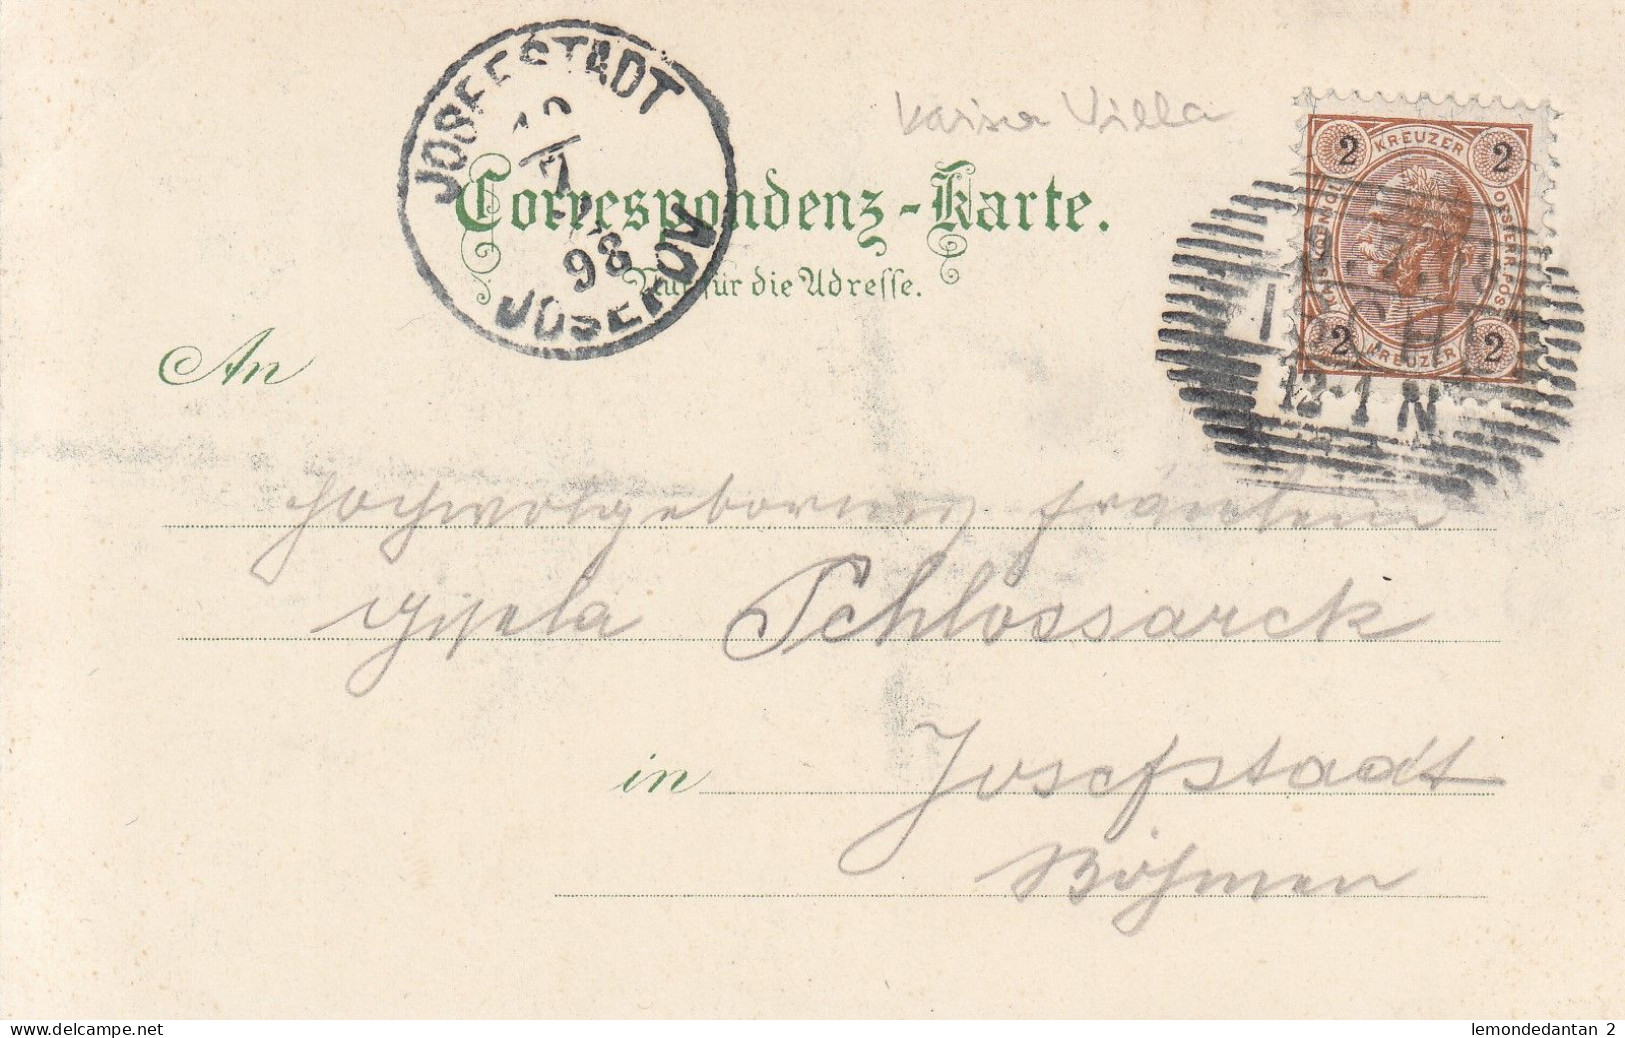 Gruss Aus Ischl - K. K. Villa In Ischl  1898 - Bad Ischl